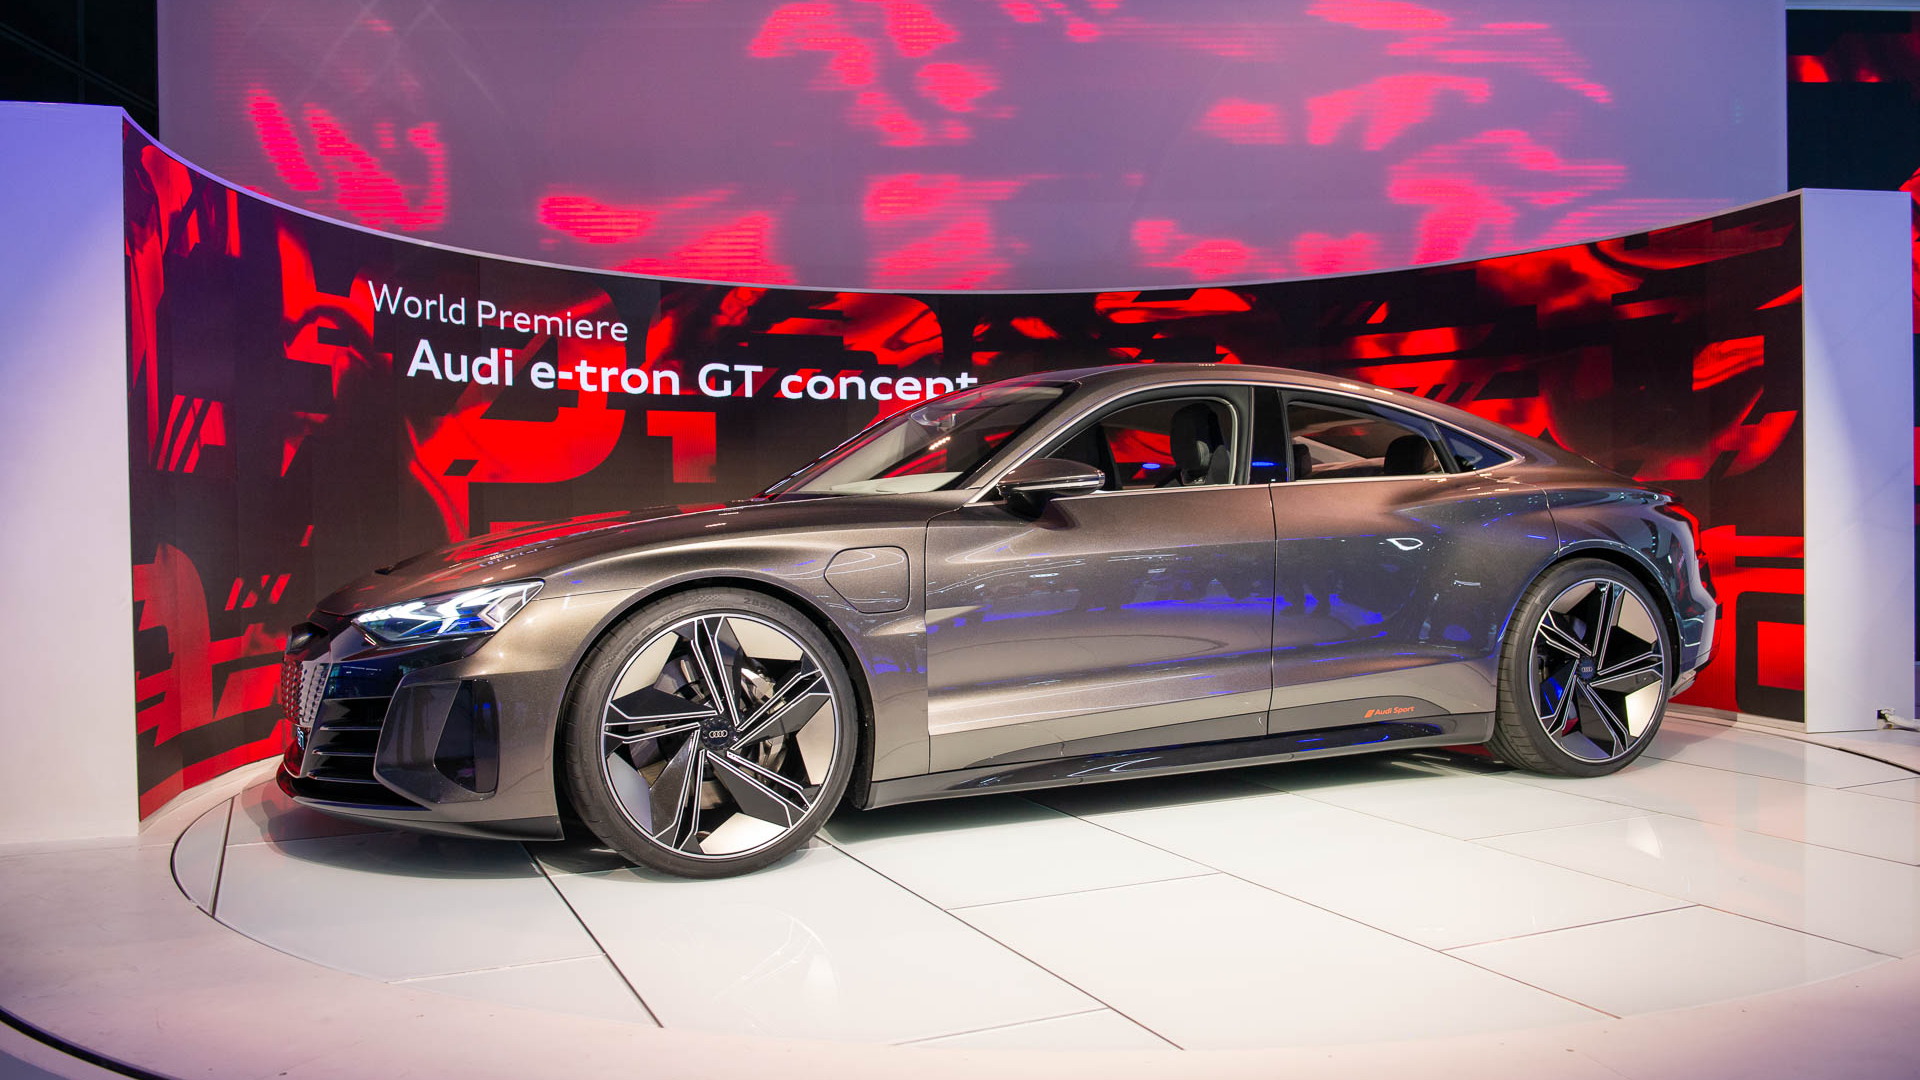 Audi e-tron GT electric sports car is its take on Porsche Taycan